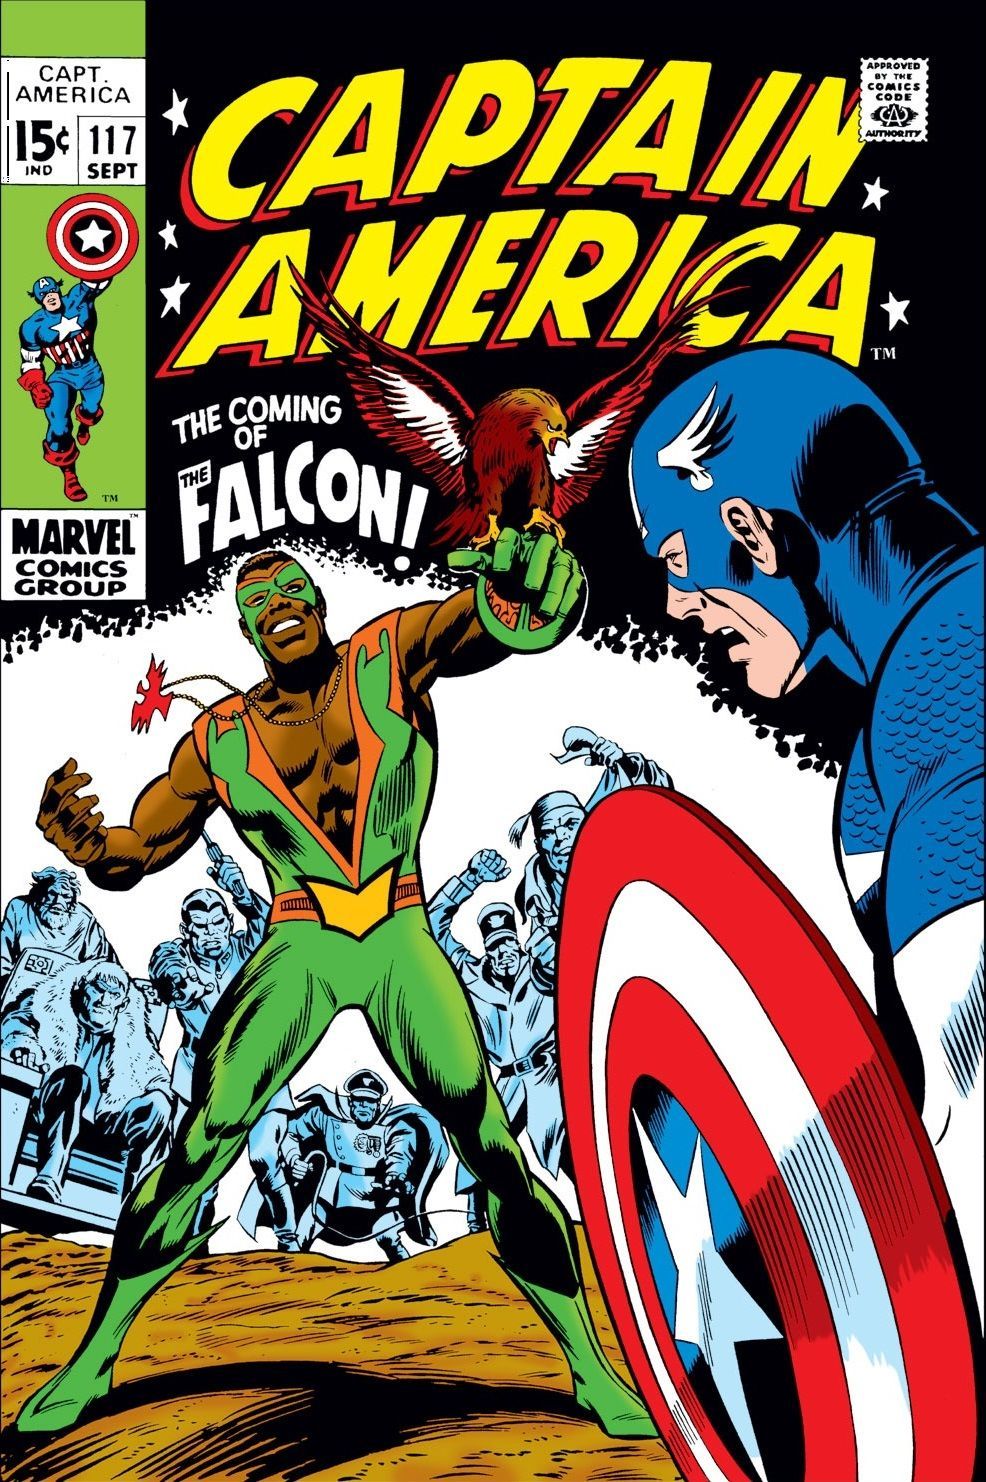 Cosa ha rotto la partnership Captain America/Falcon?